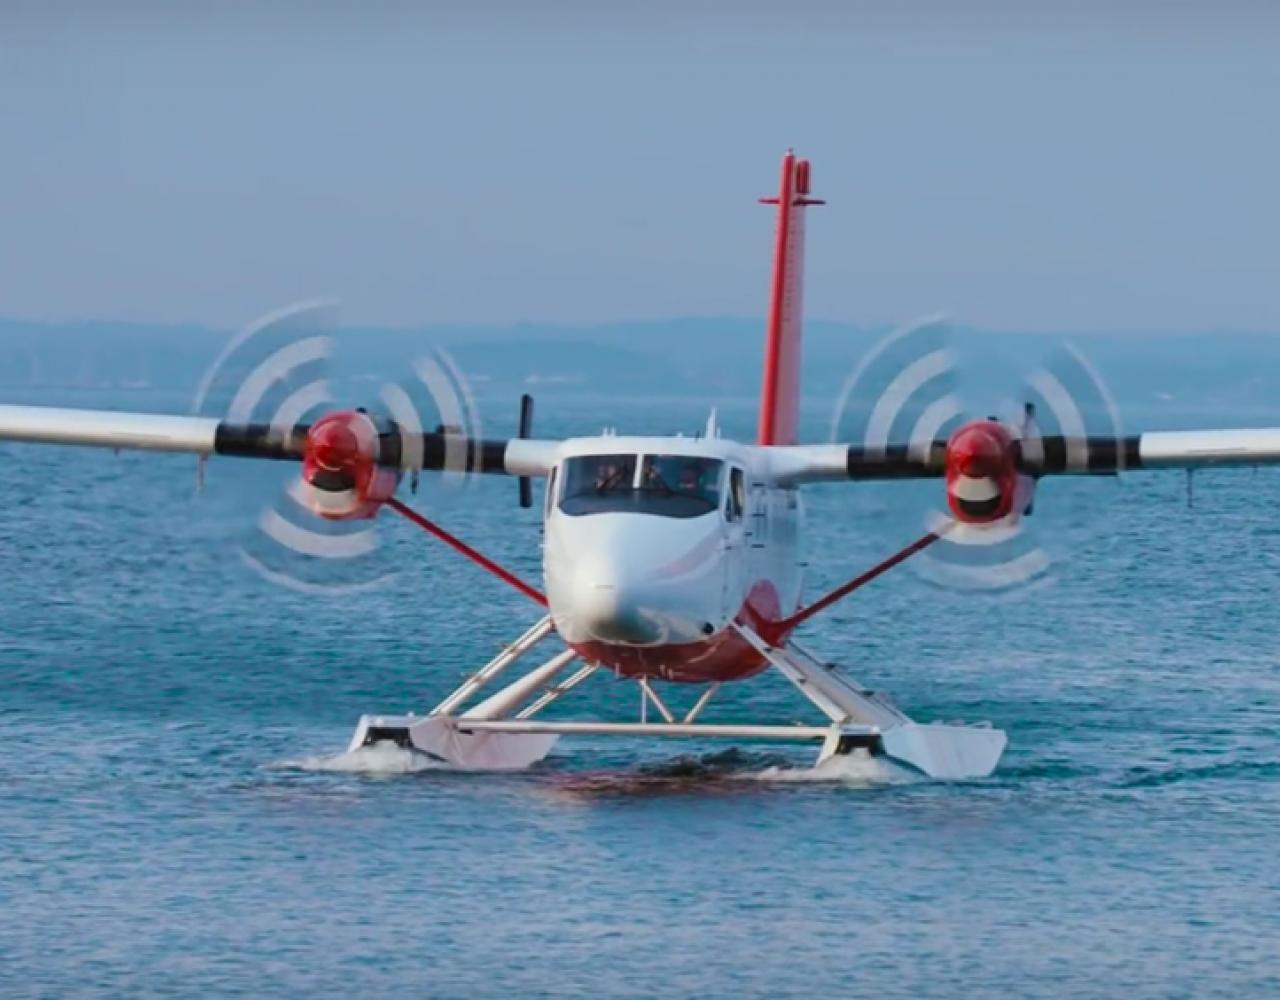 vandflyver nordic seaplanes